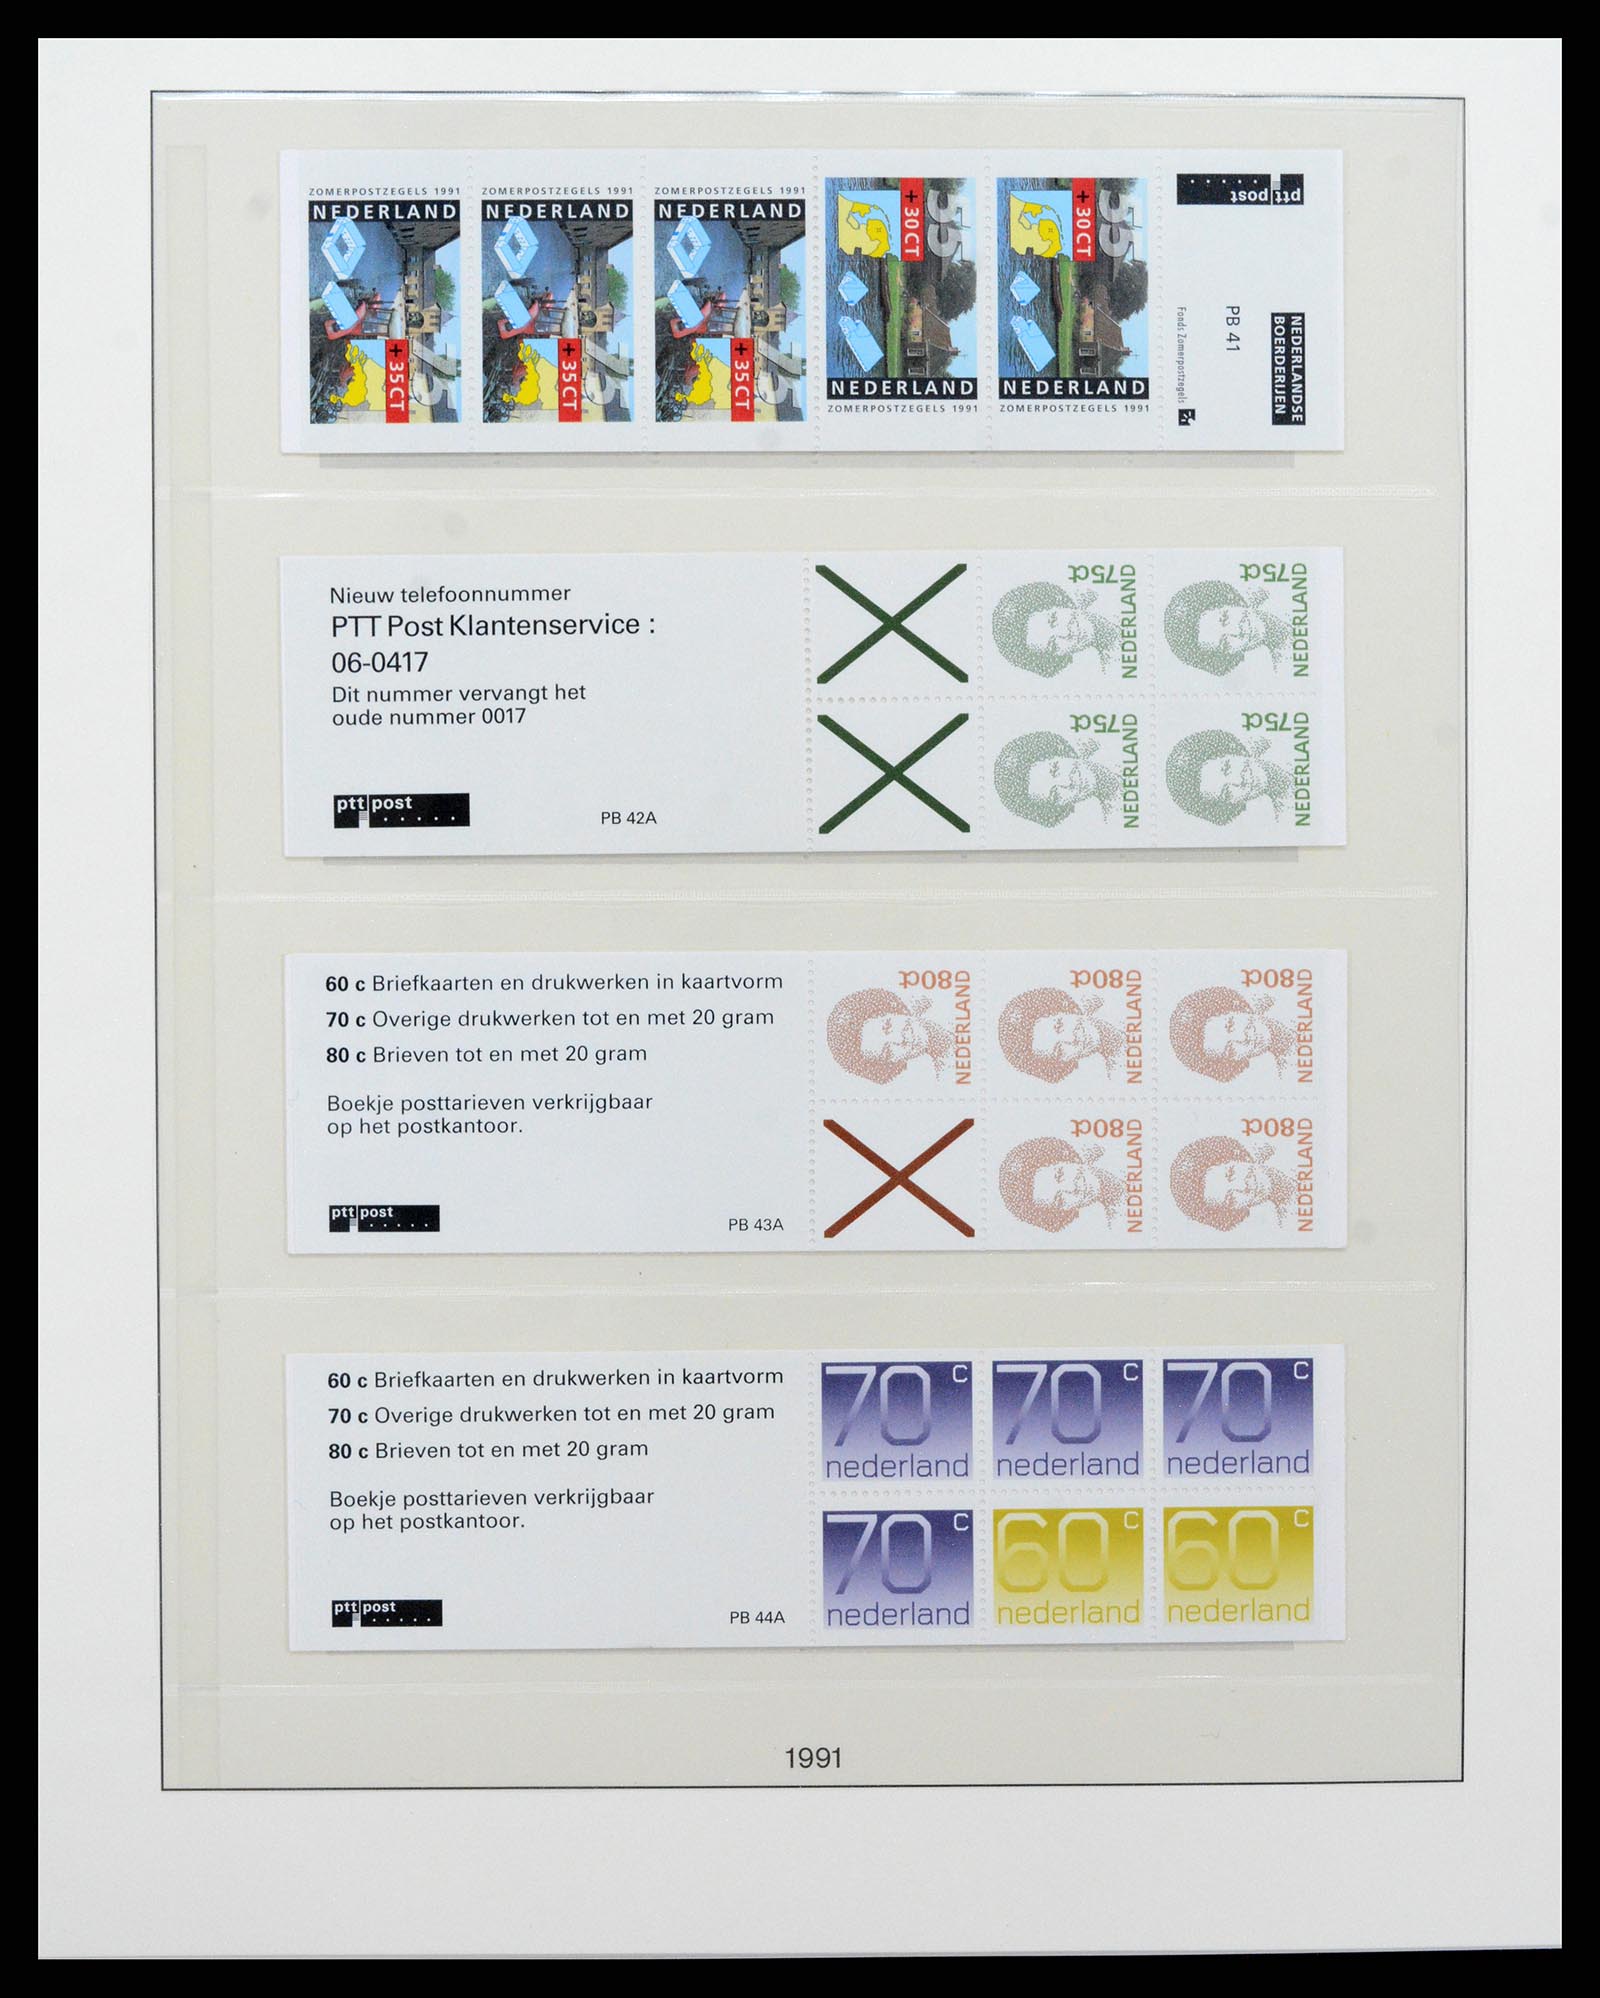 37994 025 - Stamp Collection 37994 Netherlands stampbooklets 1964-2002.